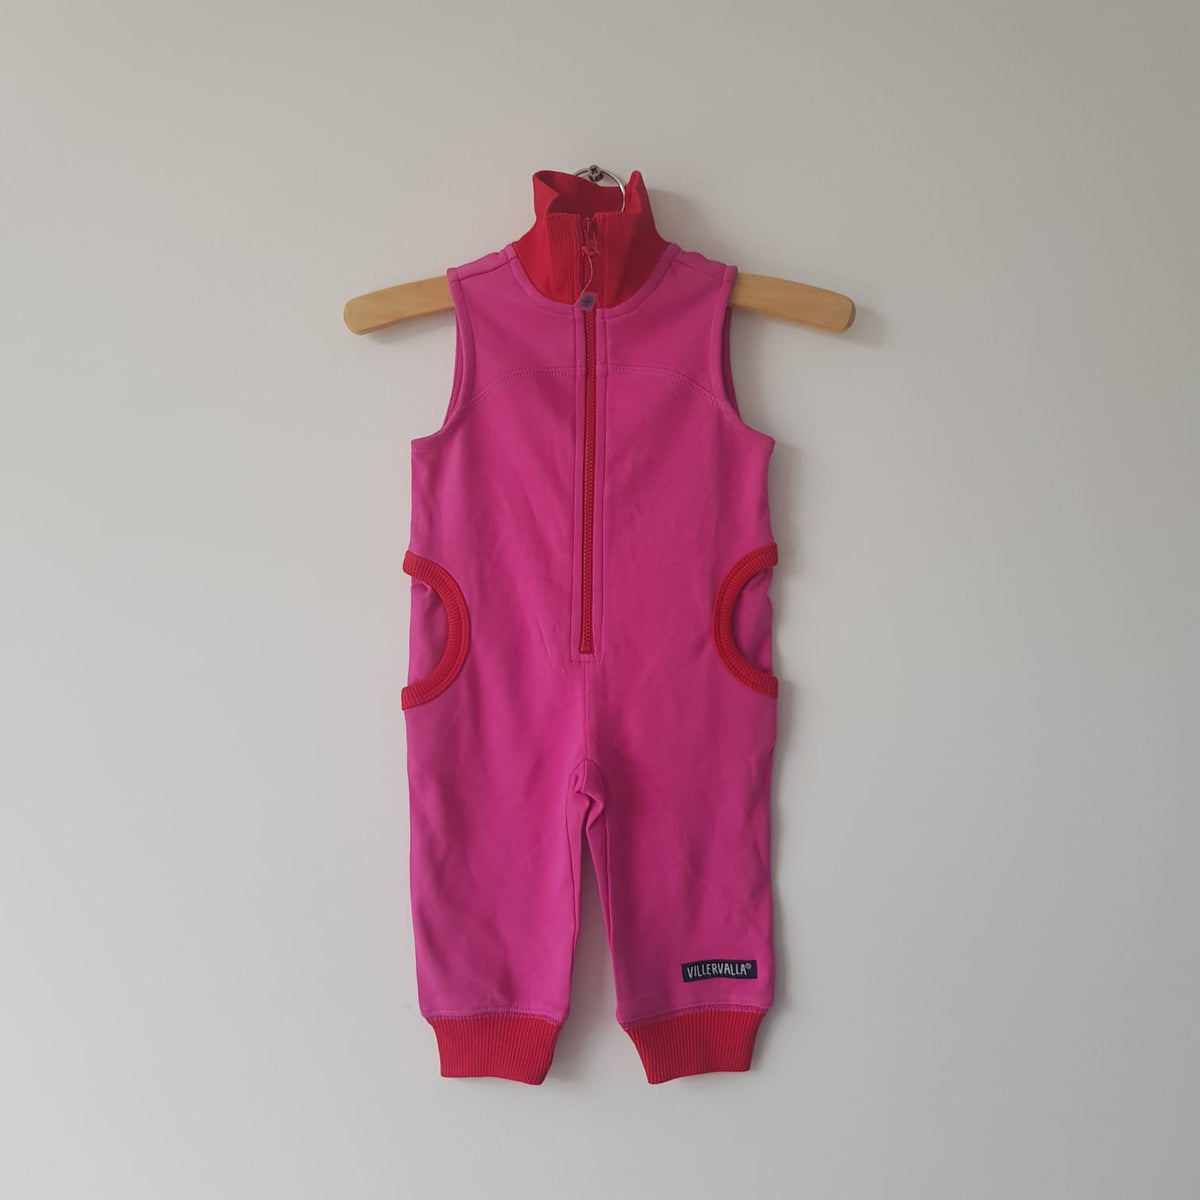 Villervalla - Jumpsuit Overall Sleeveless Raspberry Pak Frambozen Roze